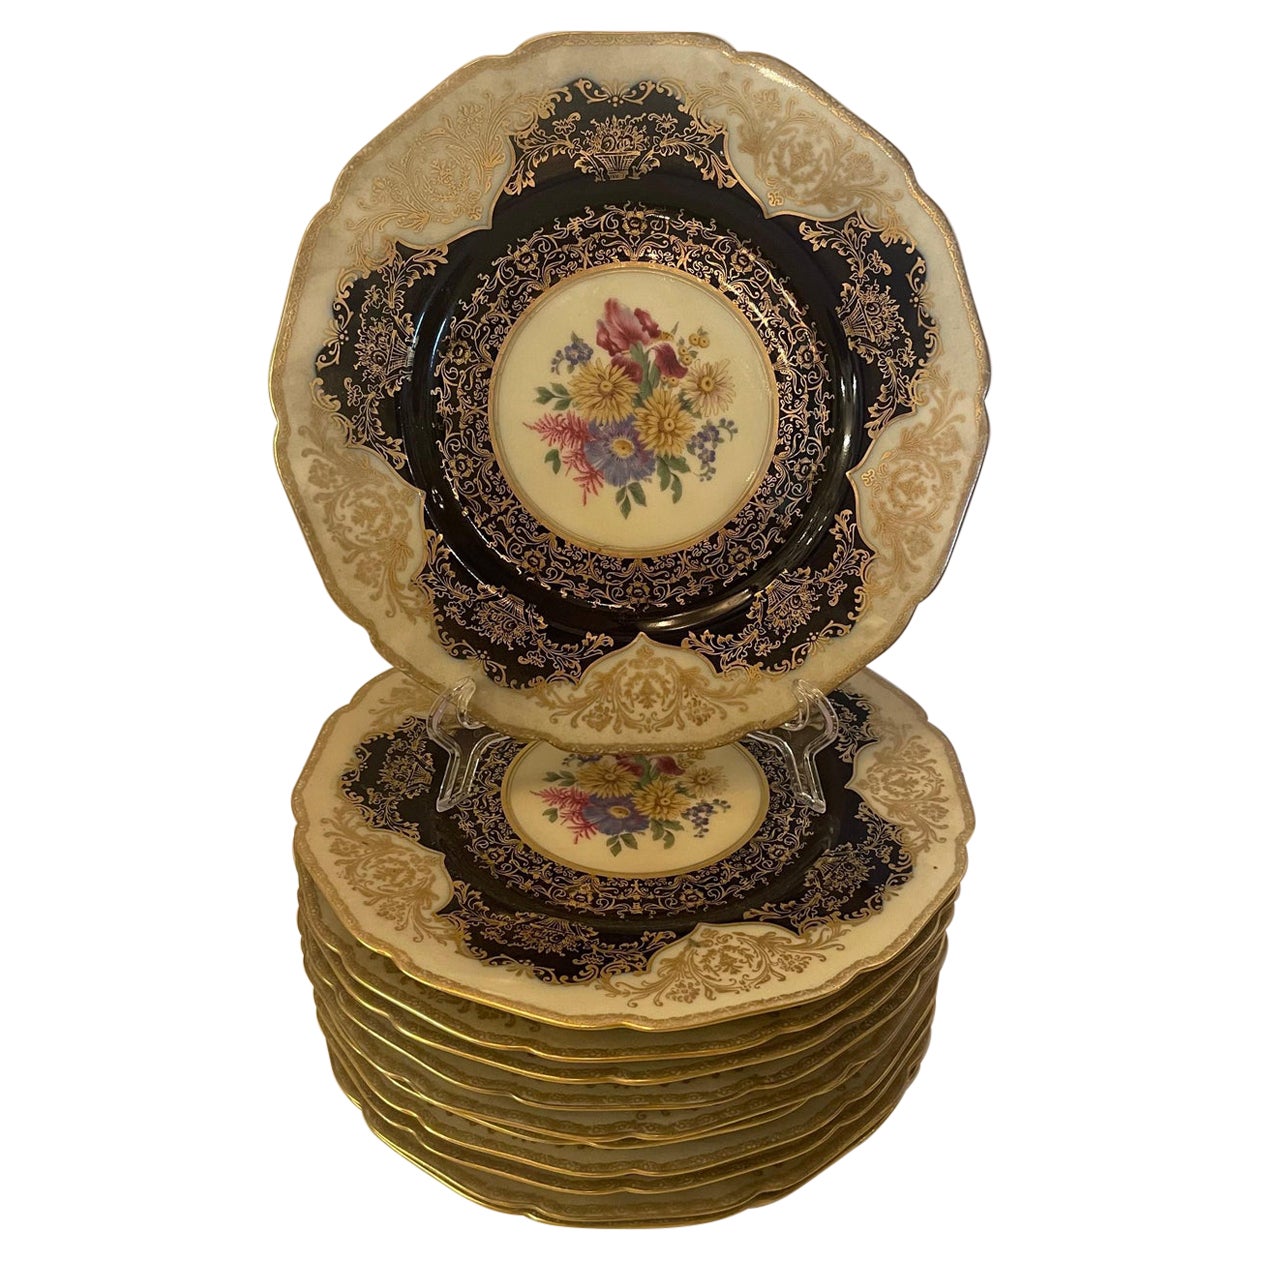 Merveilleux service à motifs floraux en porcelaine de 12 assiettes de table Noir Night Bavaria